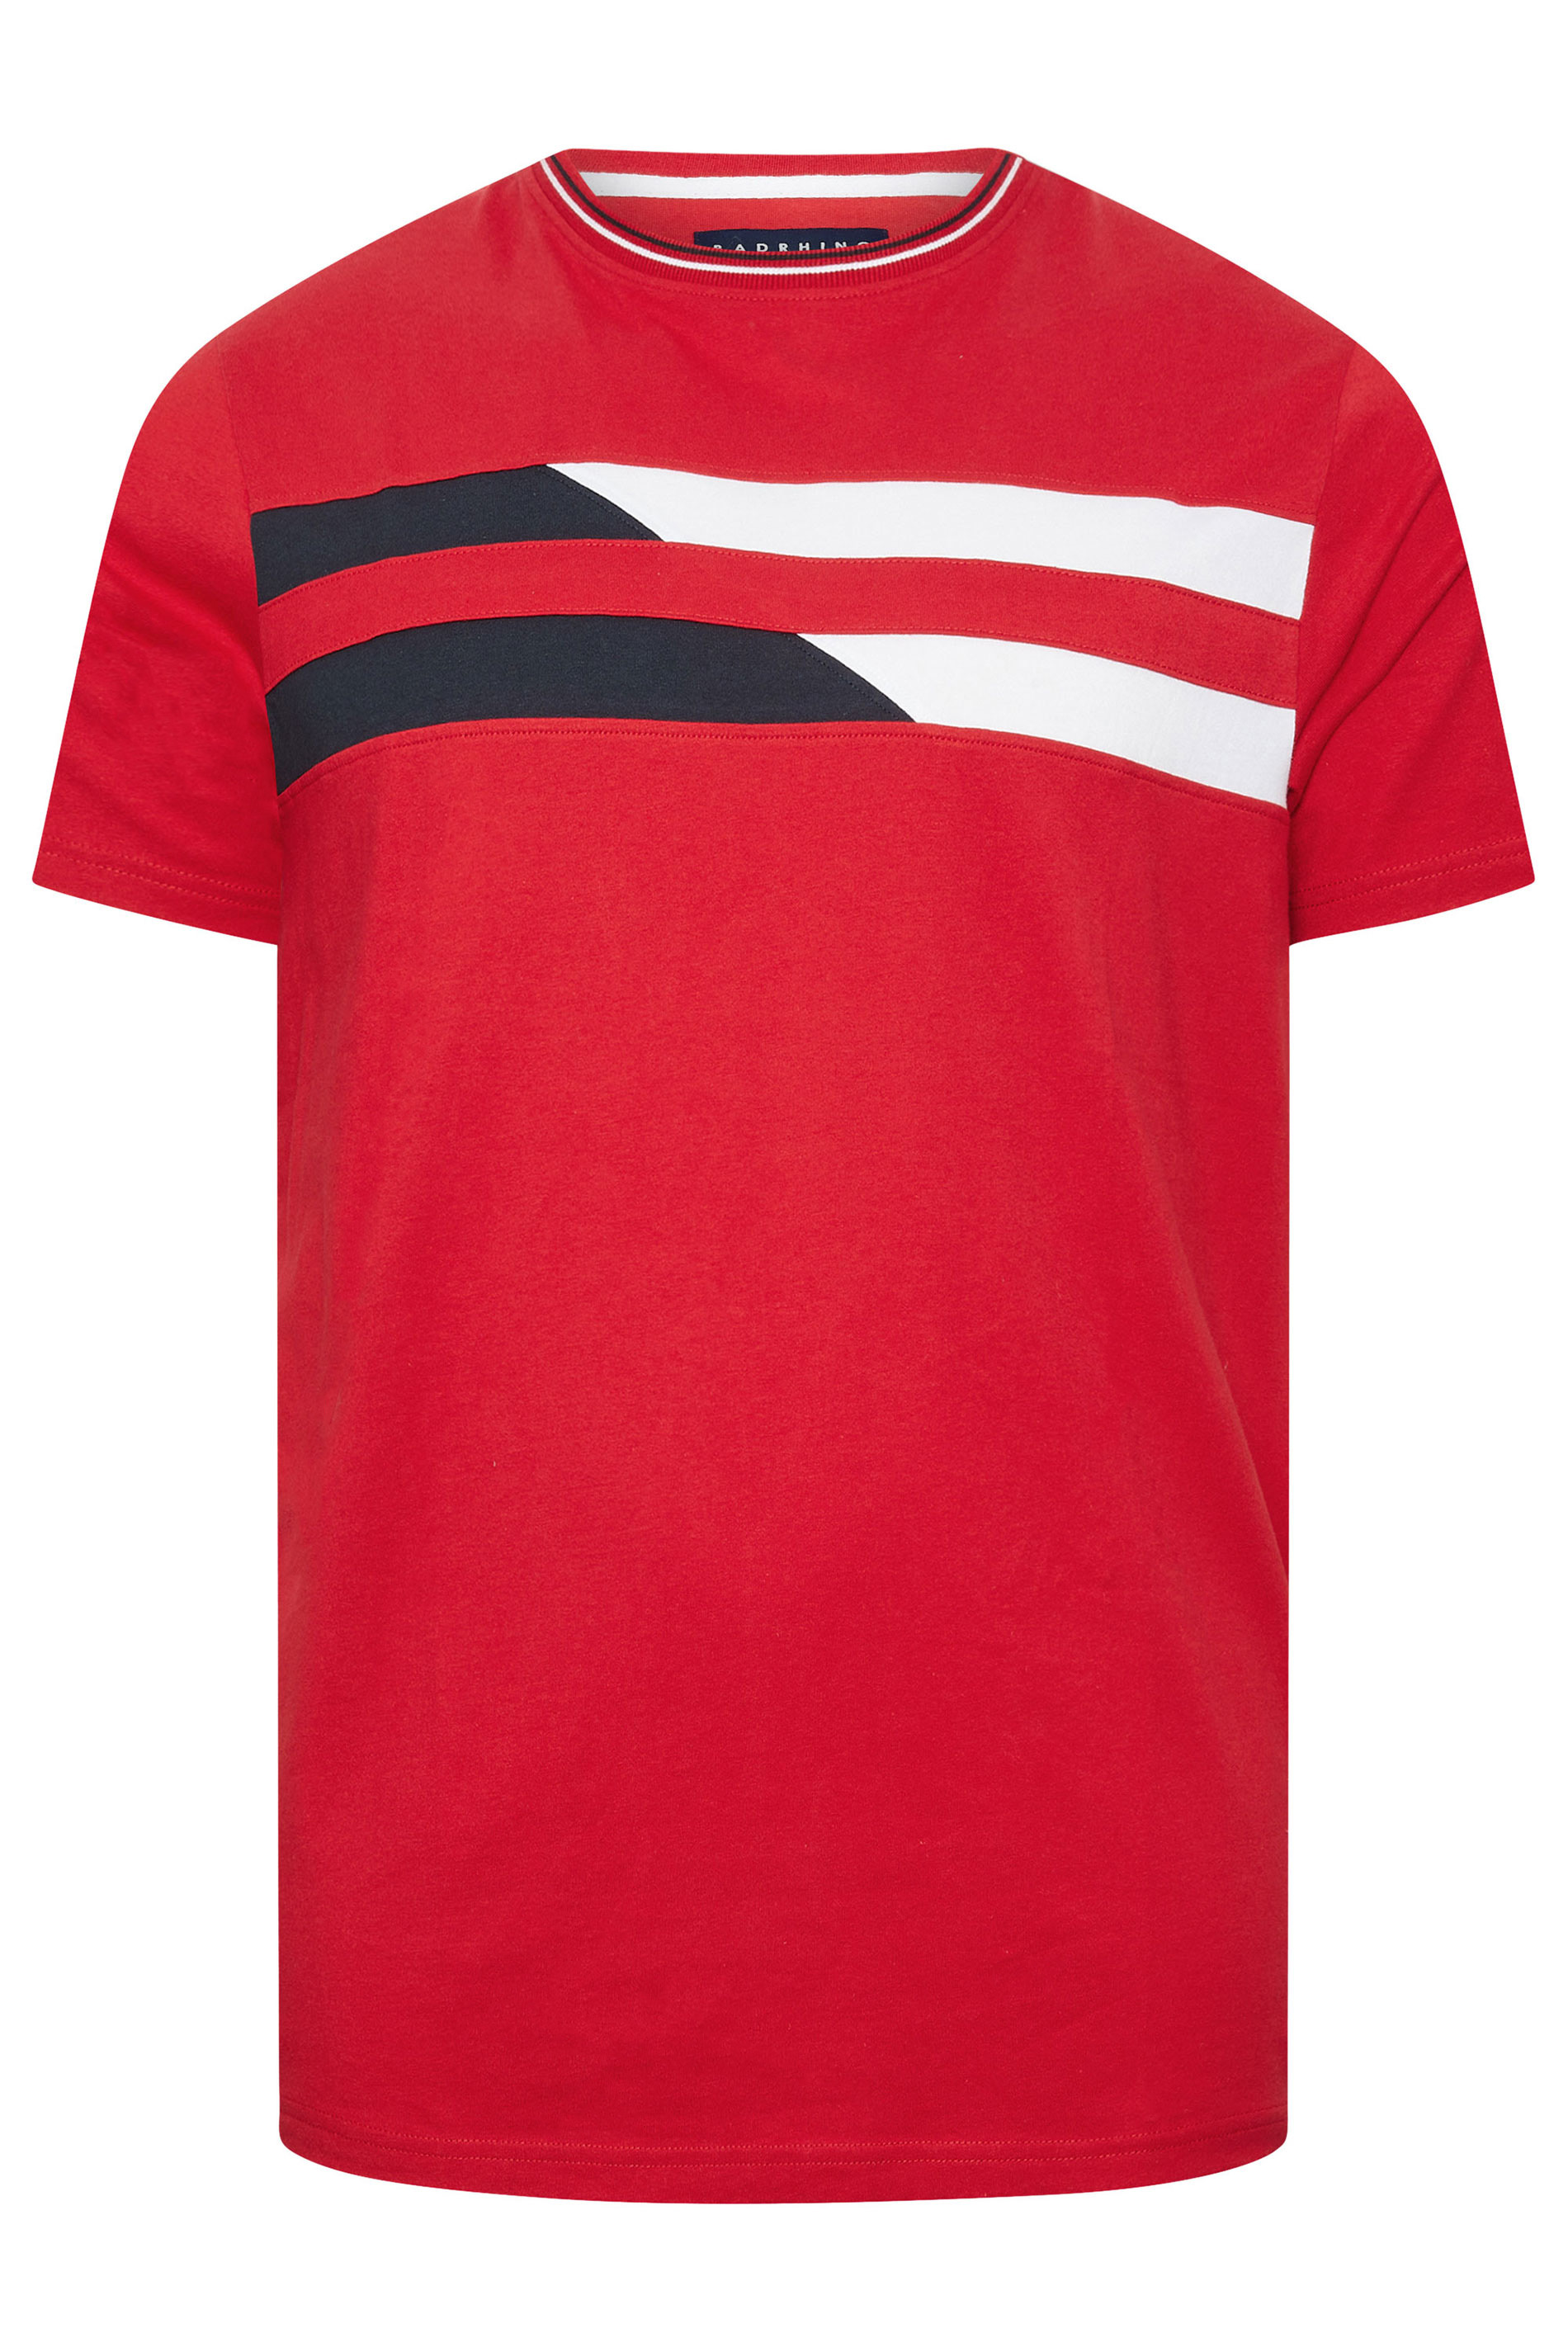 BadRhino Big & Tall Red & White Chest Stripe T-Shirt | BadRhino 2